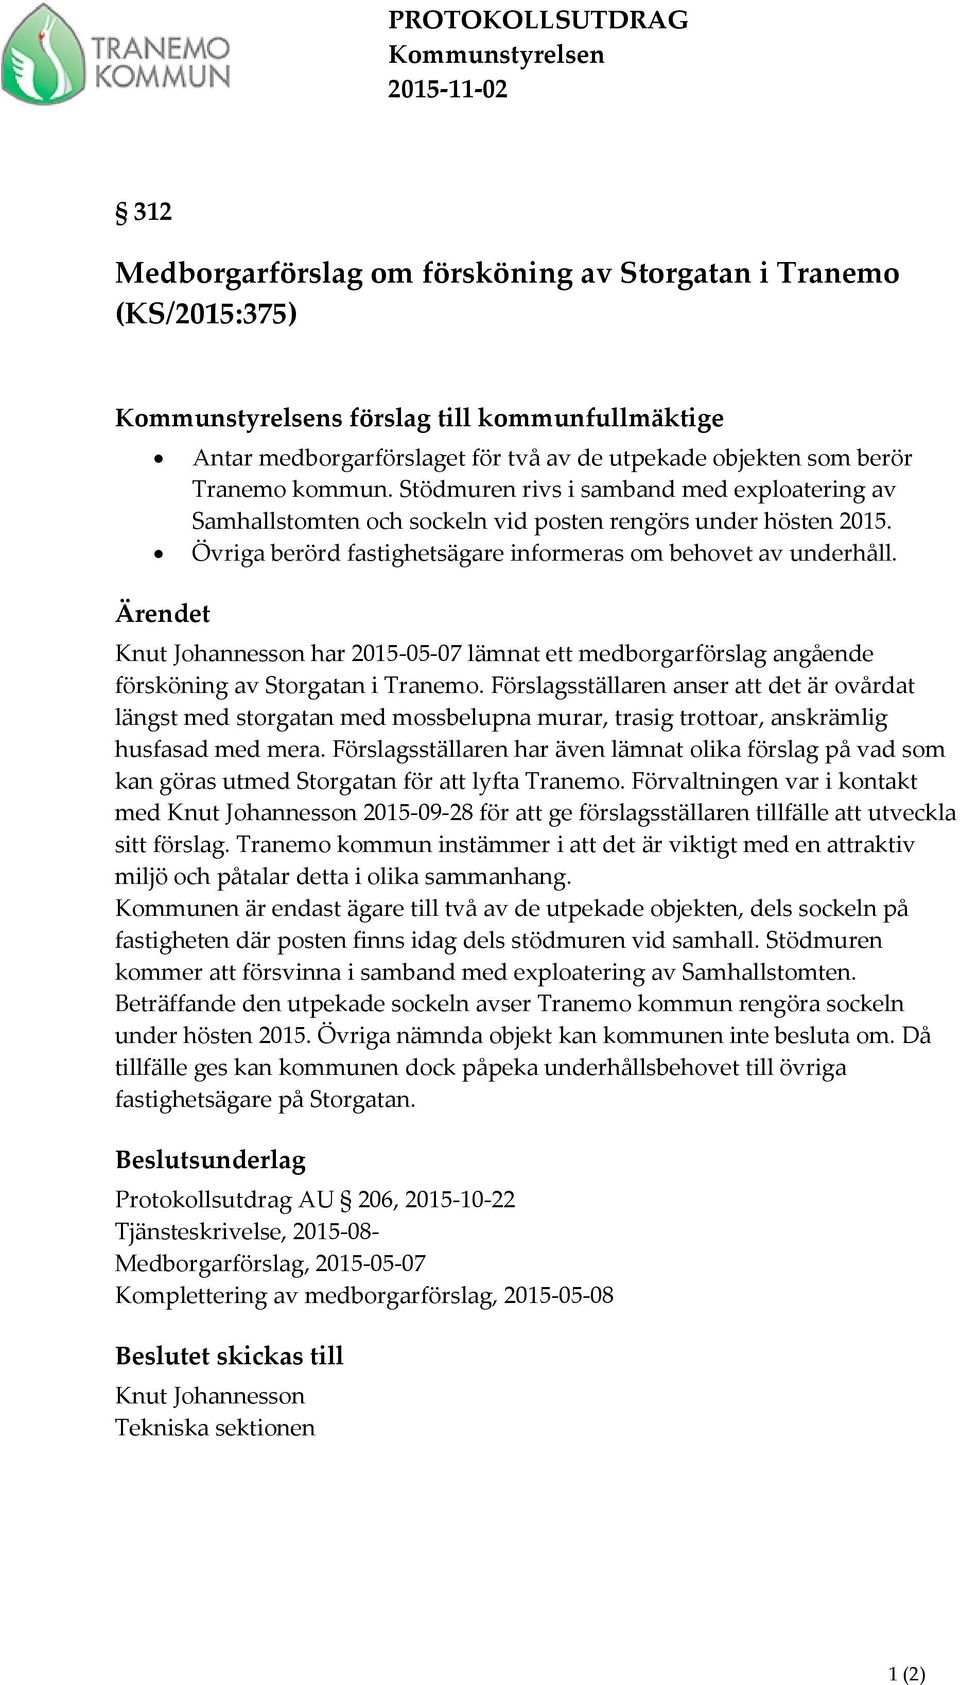 Övriga berörd fastighetsägare informeras om behovet av underhåll. Ärendet Knut Johannesson har 2015-05-07 lämnat ett medborgarförslag angående försköning av Storgatan i Tranemo.